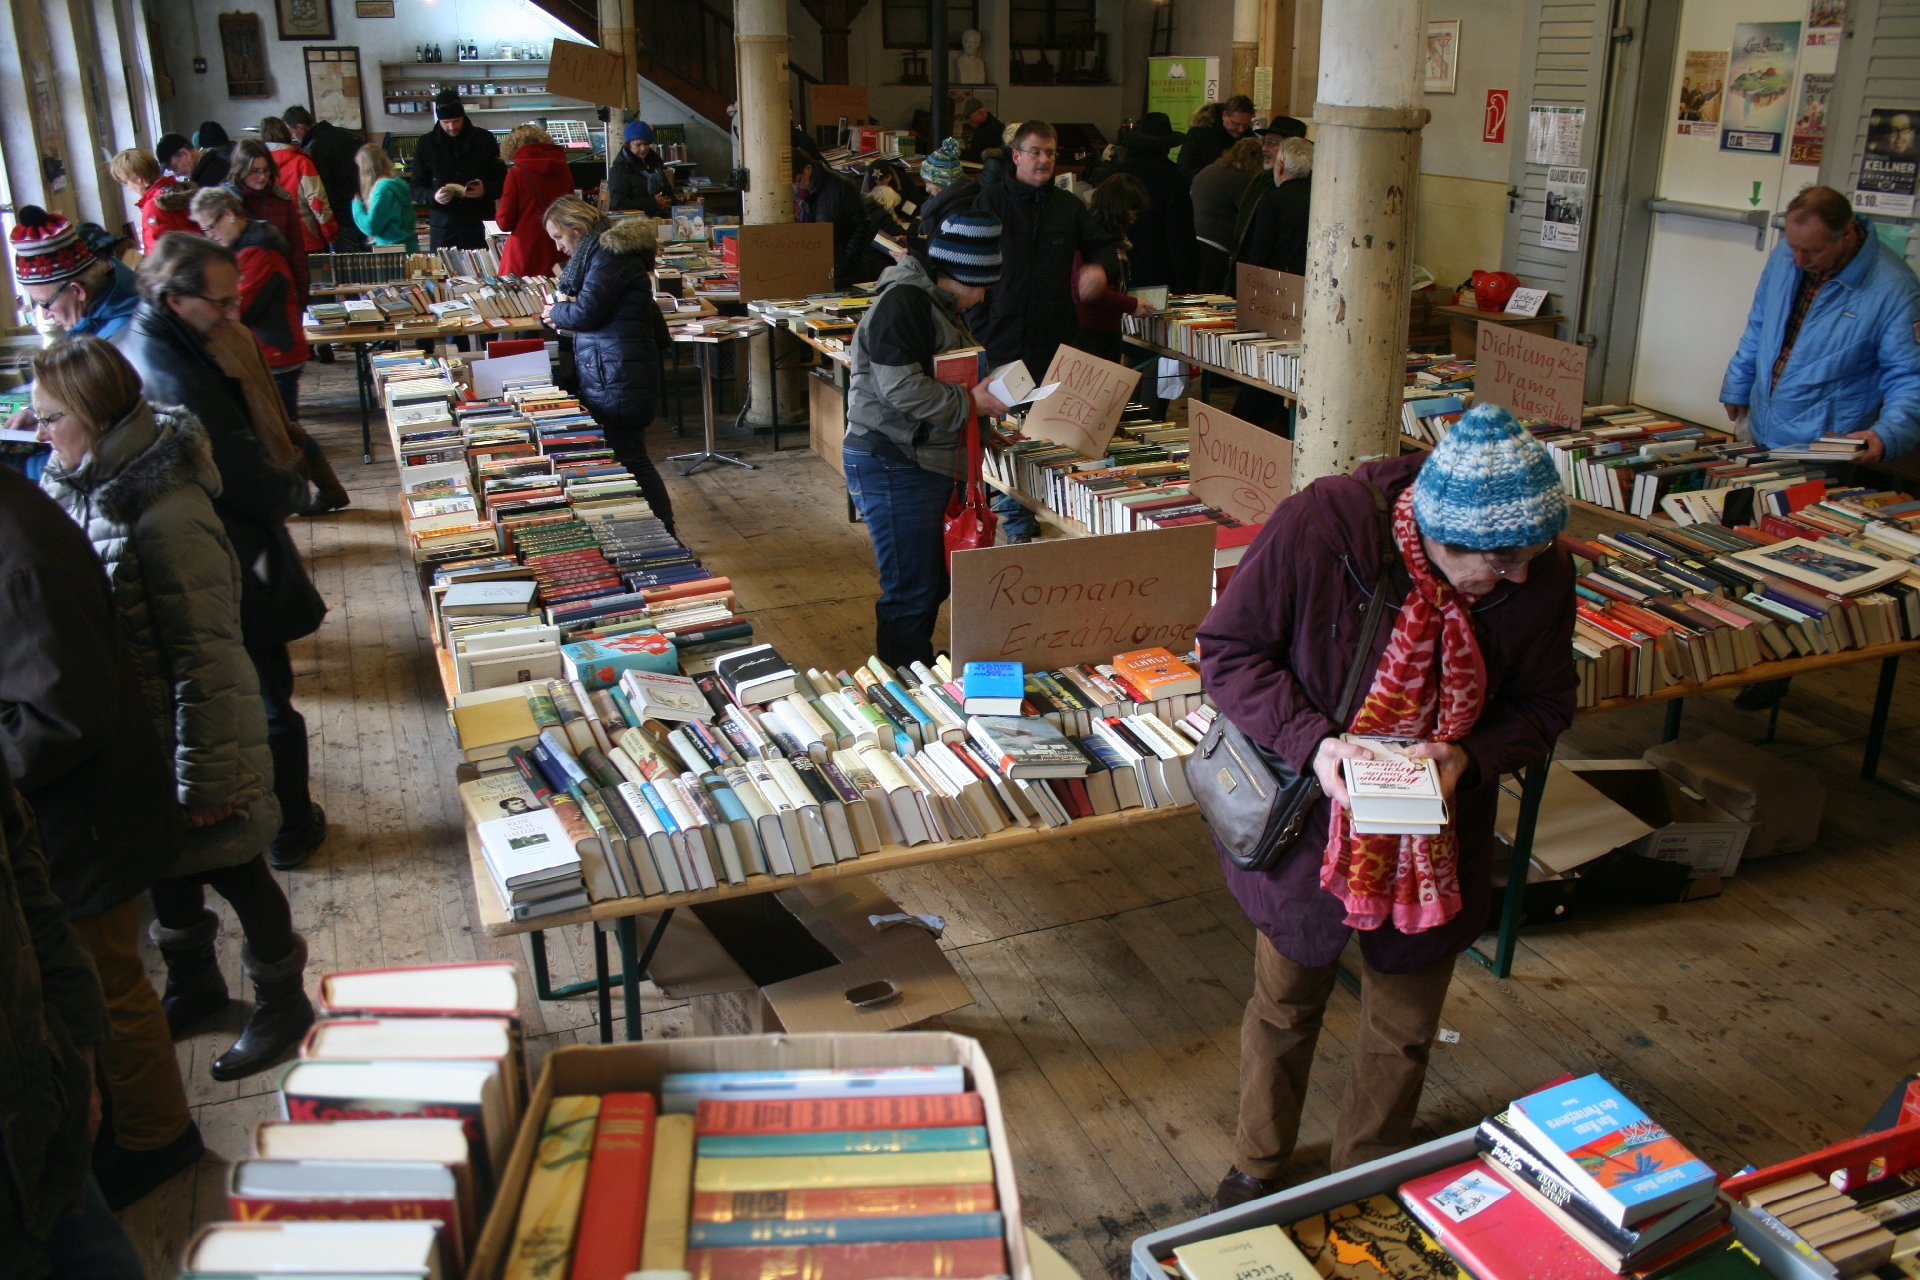 Der Bücherflohmarkt in der Historischen Druckerei Seidel in Sulzbach-Rosenberg hält für Leseratten unzählige Schätze bereit. Archivbild: Corinna Groth